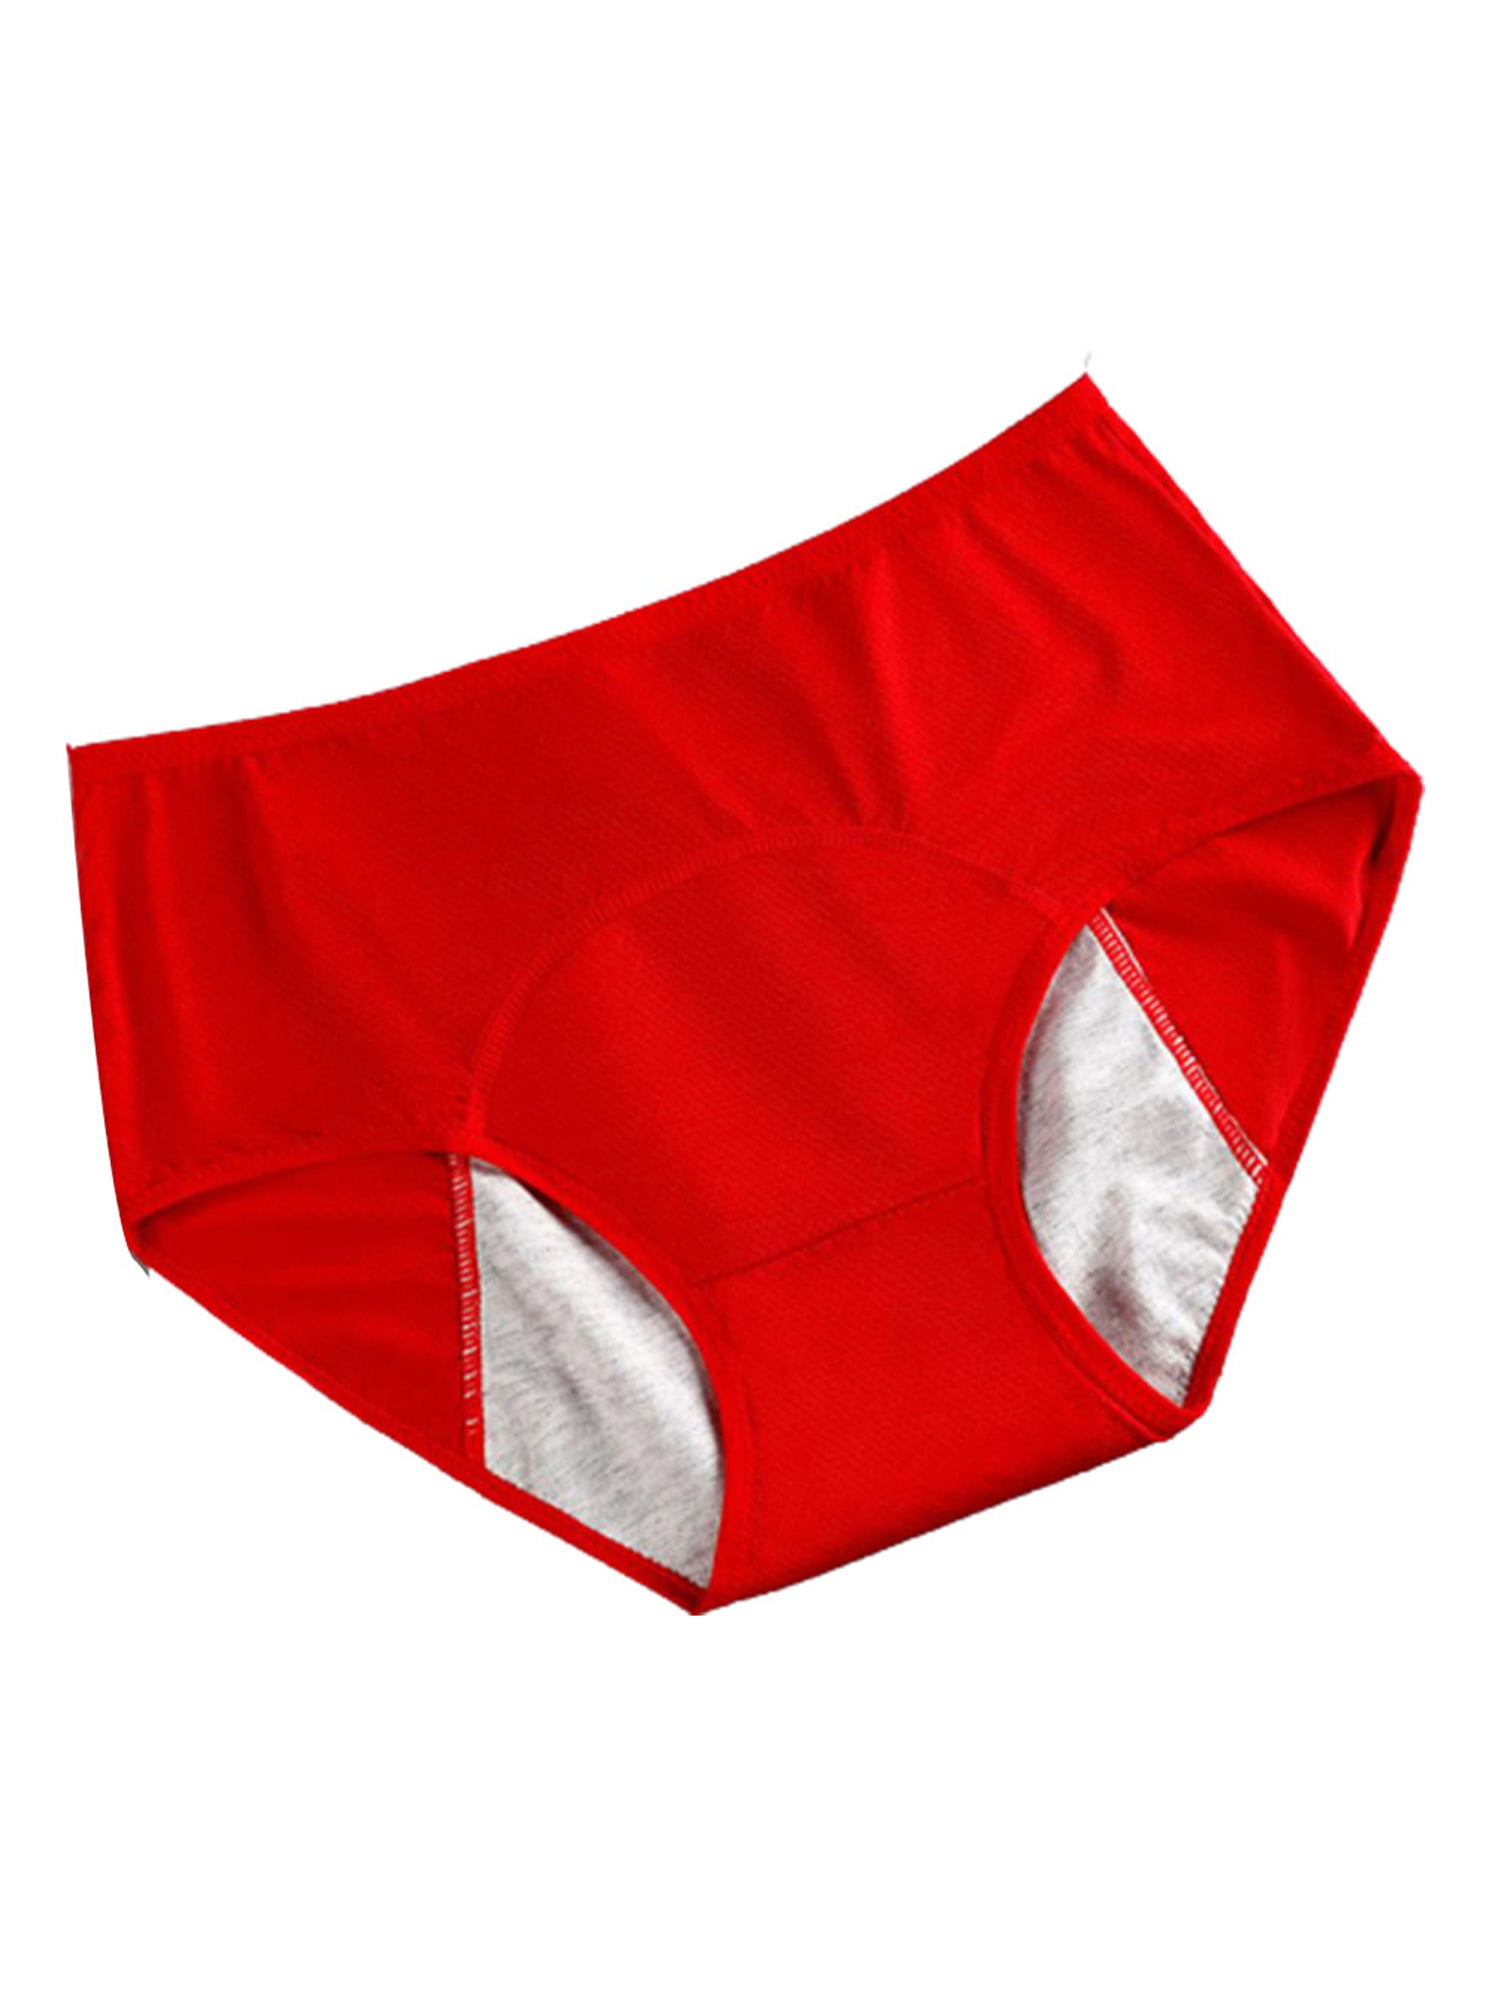 Women Underwear period Panties leak proof Plus Size Panty Briefs Knicker 2XL-4XL 